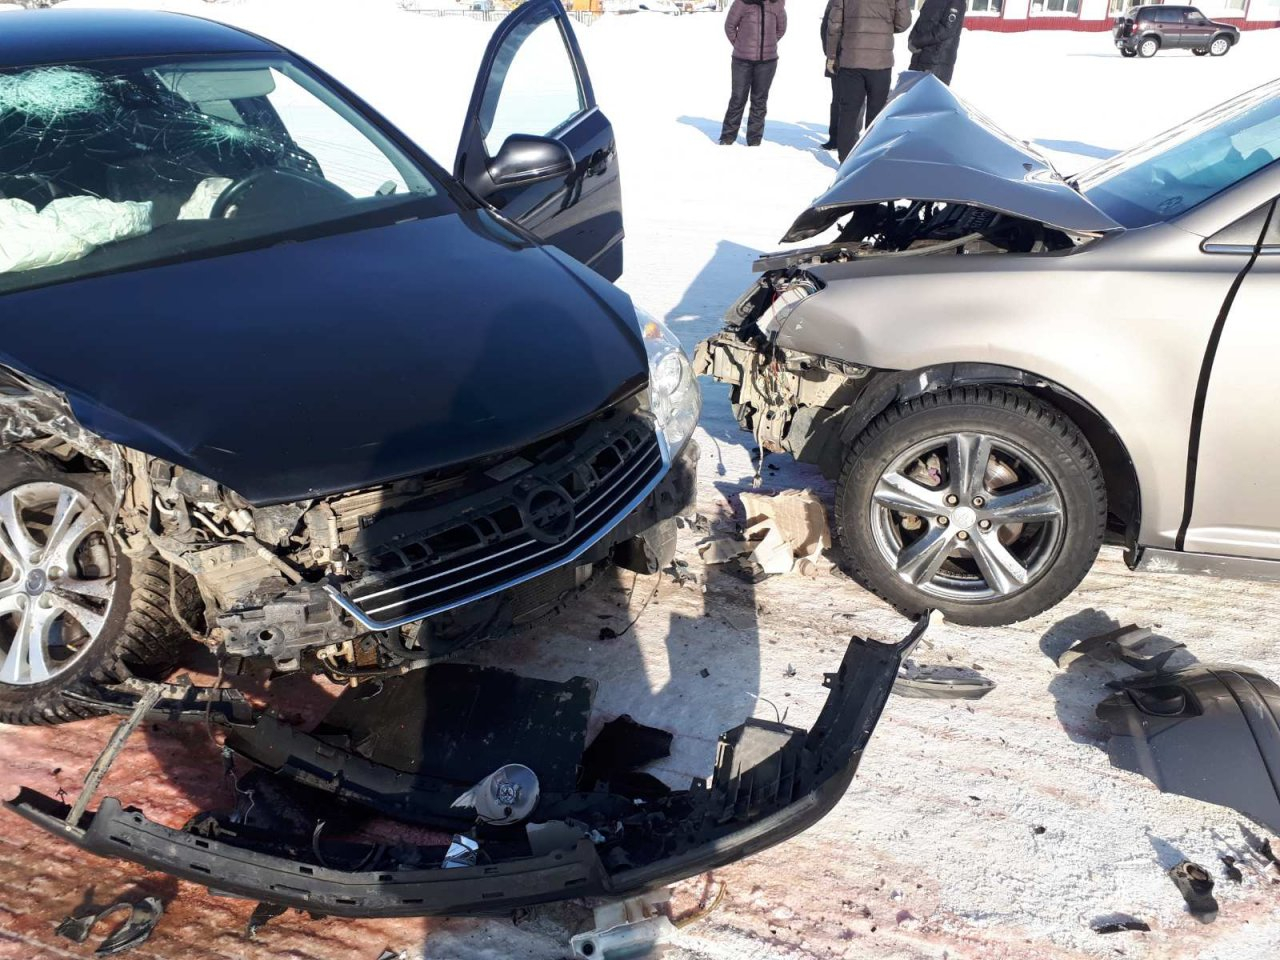 Ремни безопасности спасли жизнь пассажирам авто в ДТП под Сосногорском